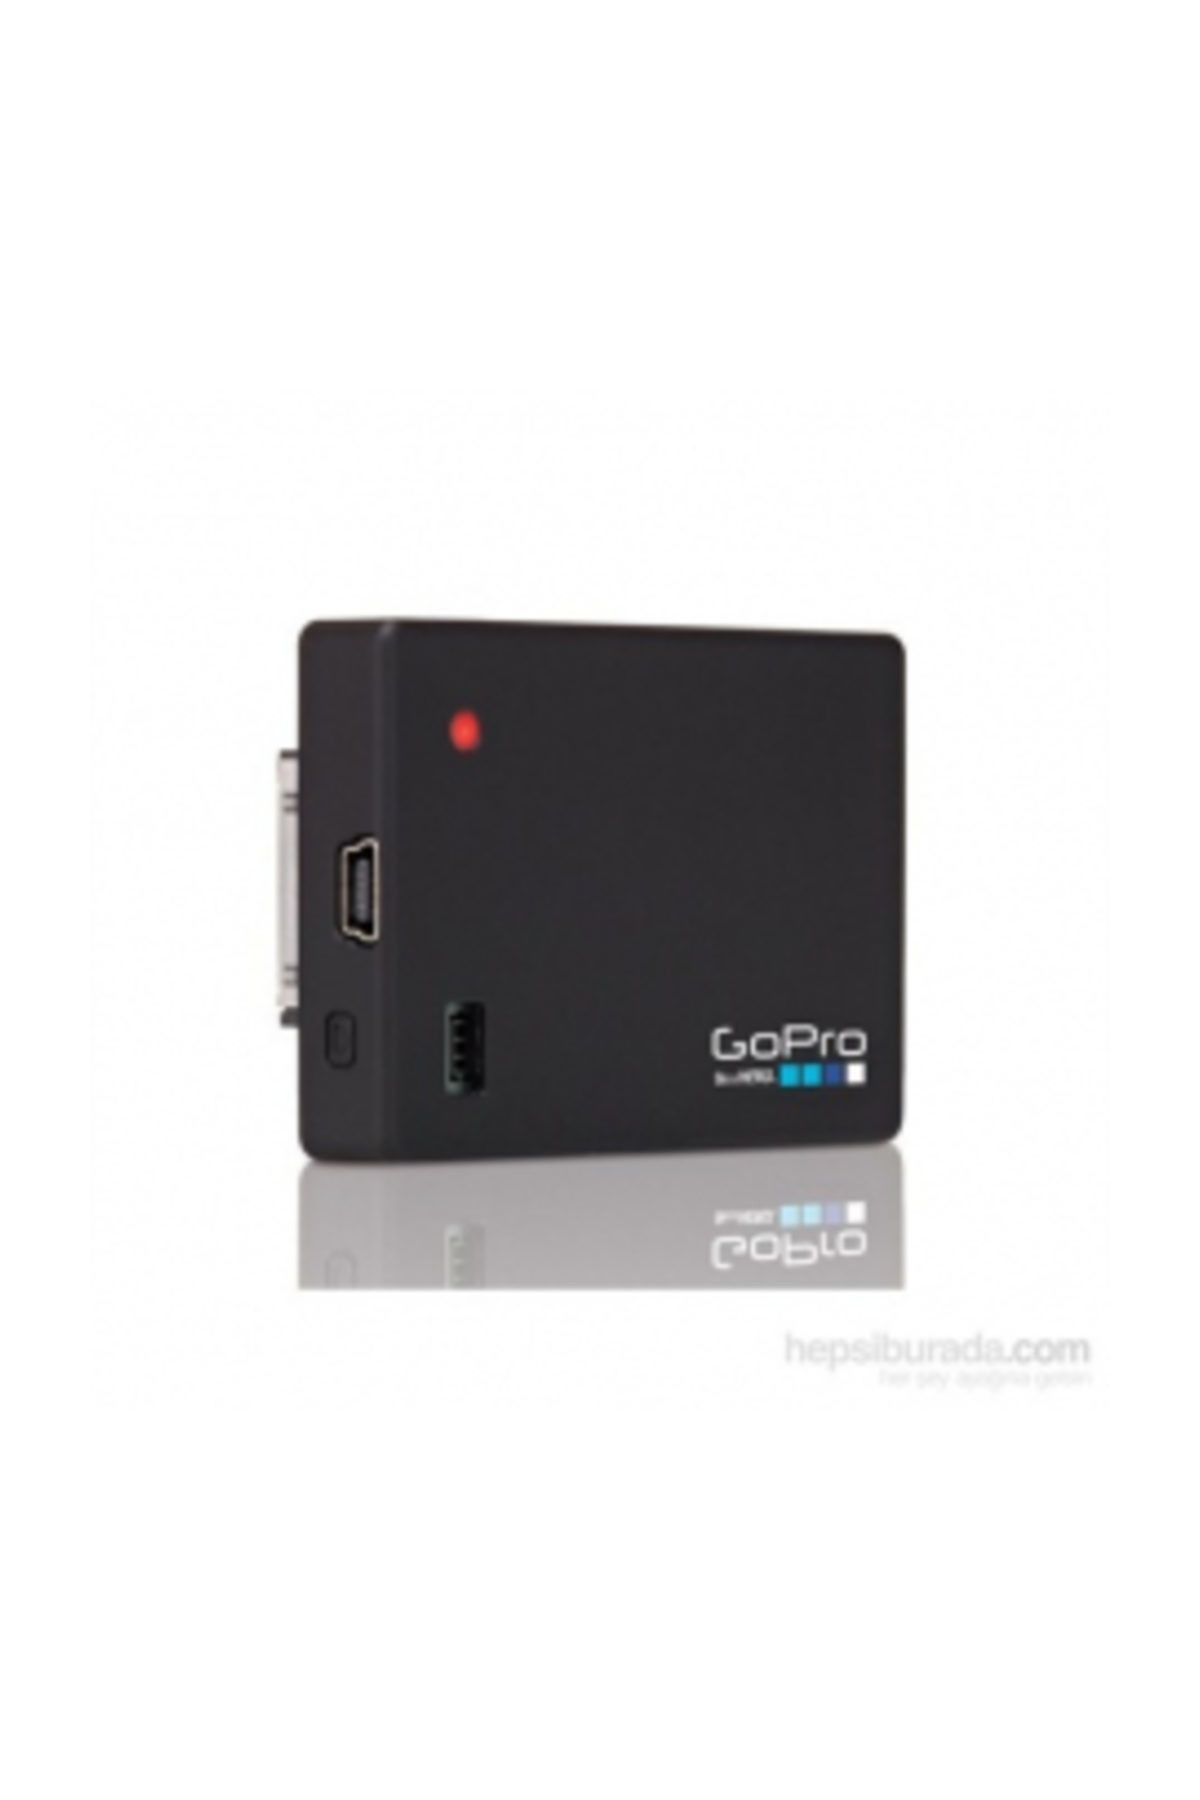 GoPro Eklenti Pil / Battery Bacpac